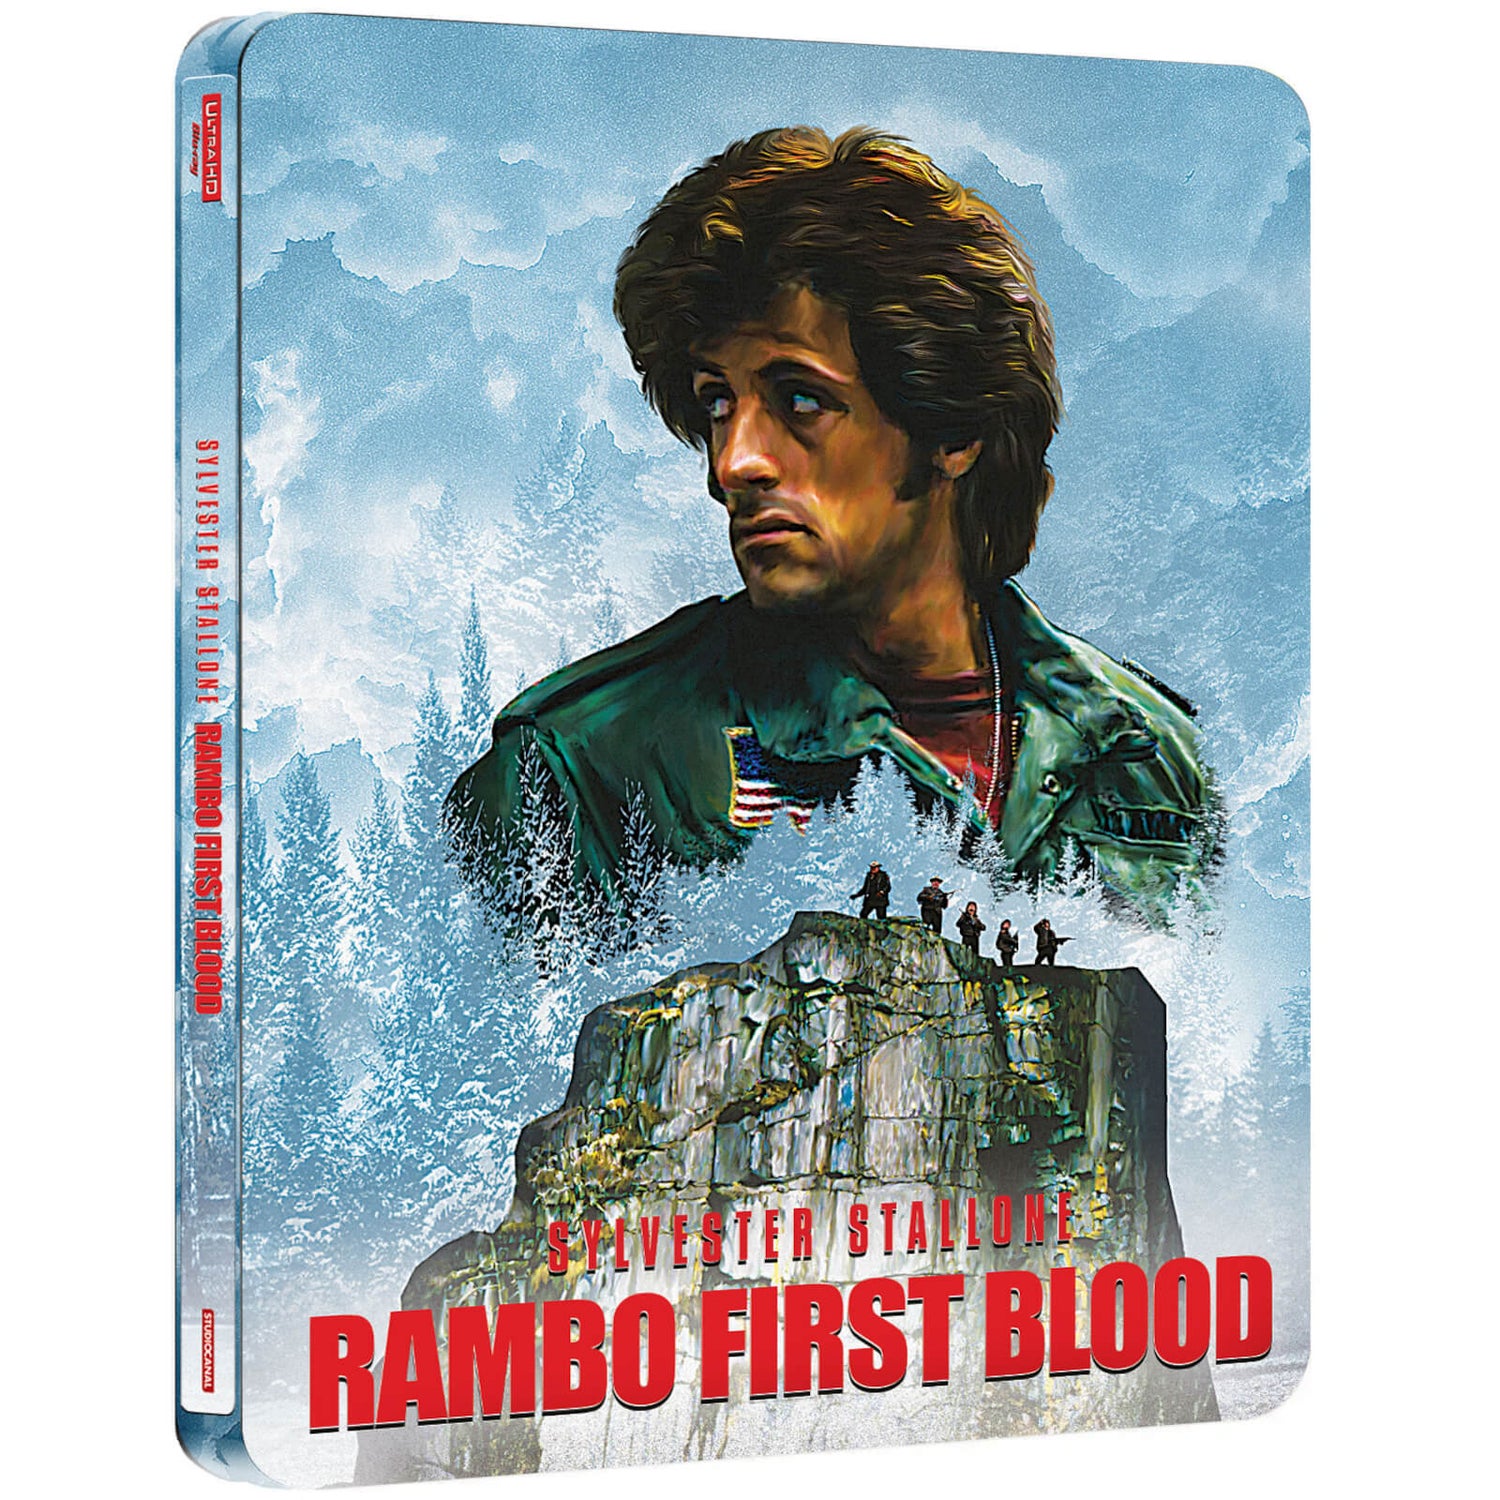 Acorralado (Rambo) Steelbook Exclusivo de Zavvi en 4K Ultra HD